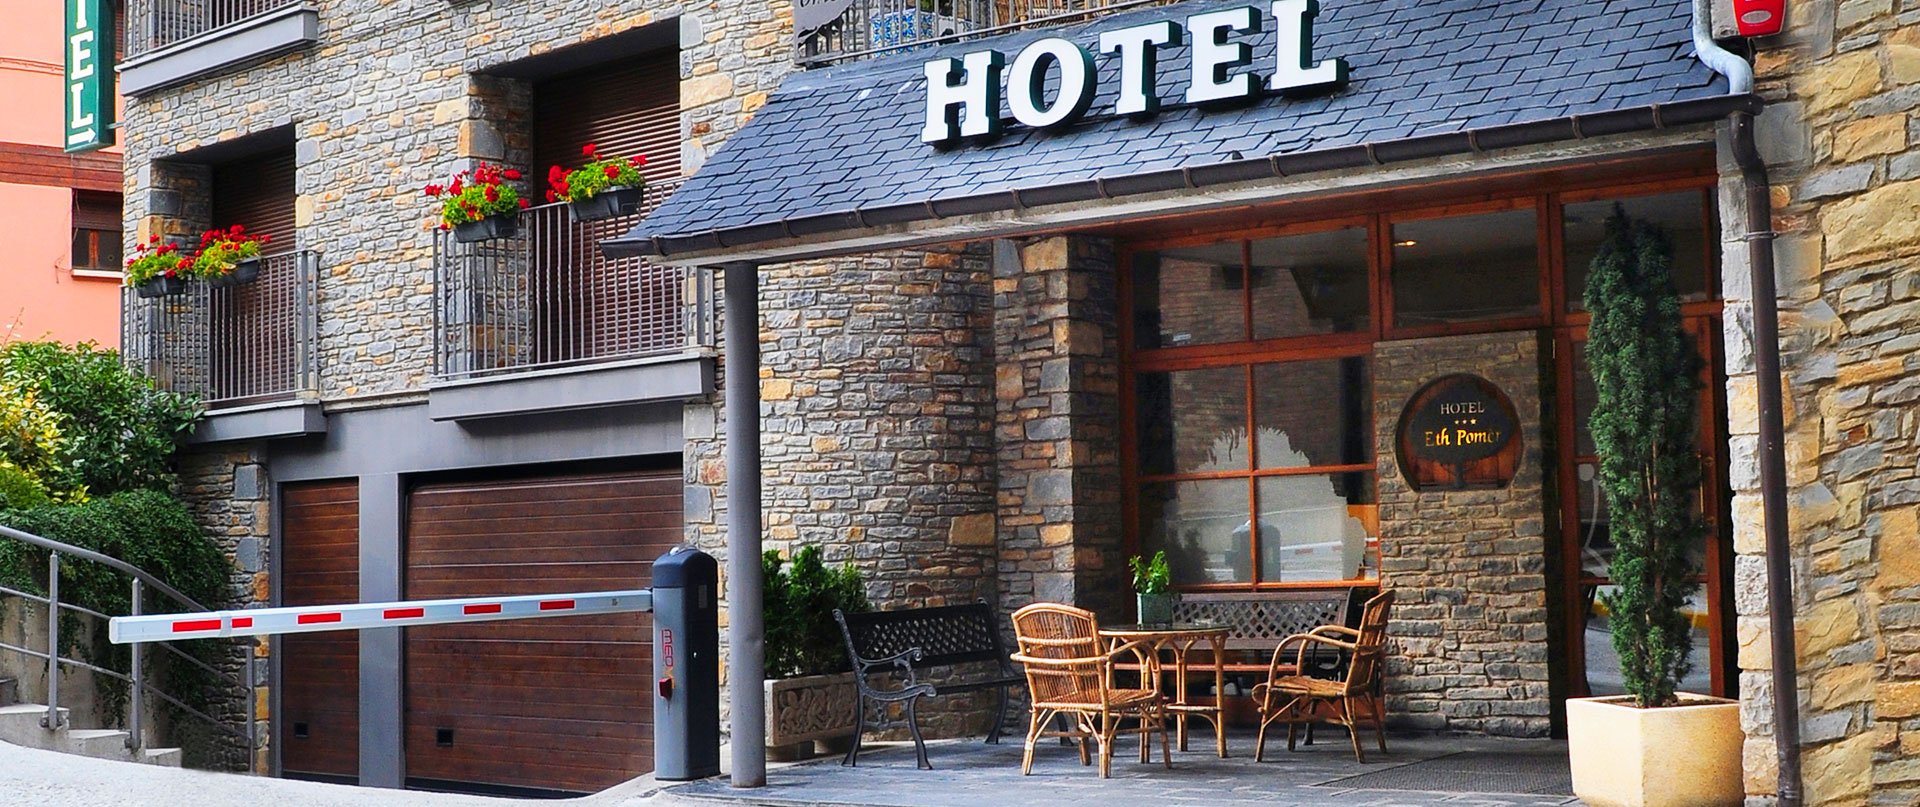 La Vall d'Aran té hotels de 3 estrelles molt ben valorats a Booking